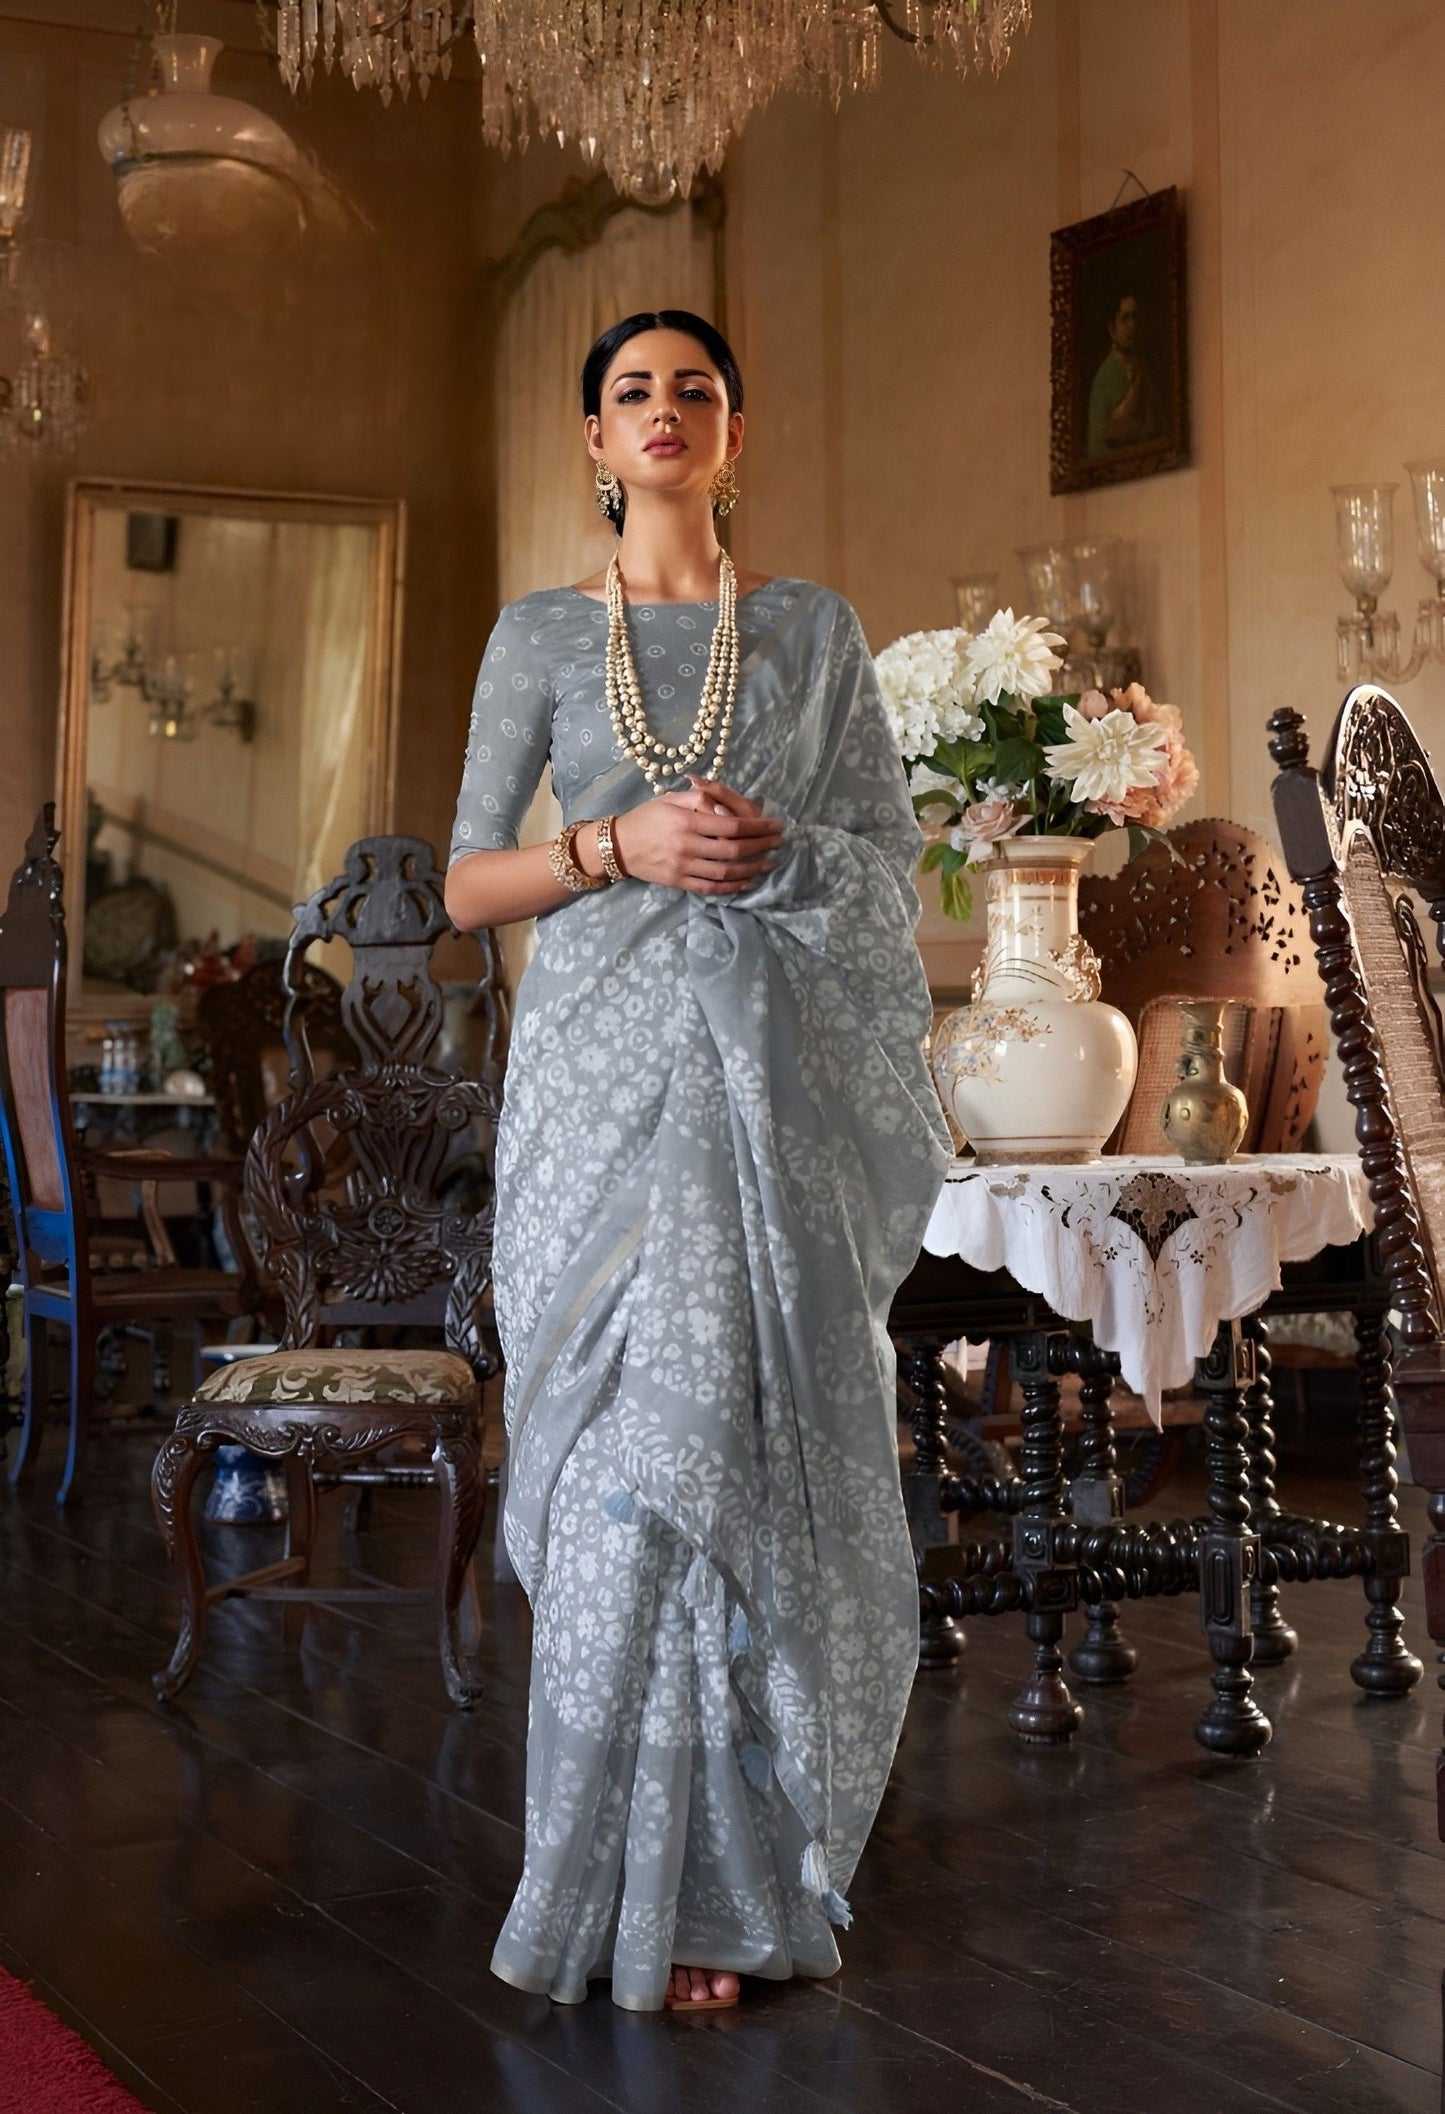 EKKTARA Saree For Women Grey Colour Soft Linen Cotton Saree With Unstitched Blouse